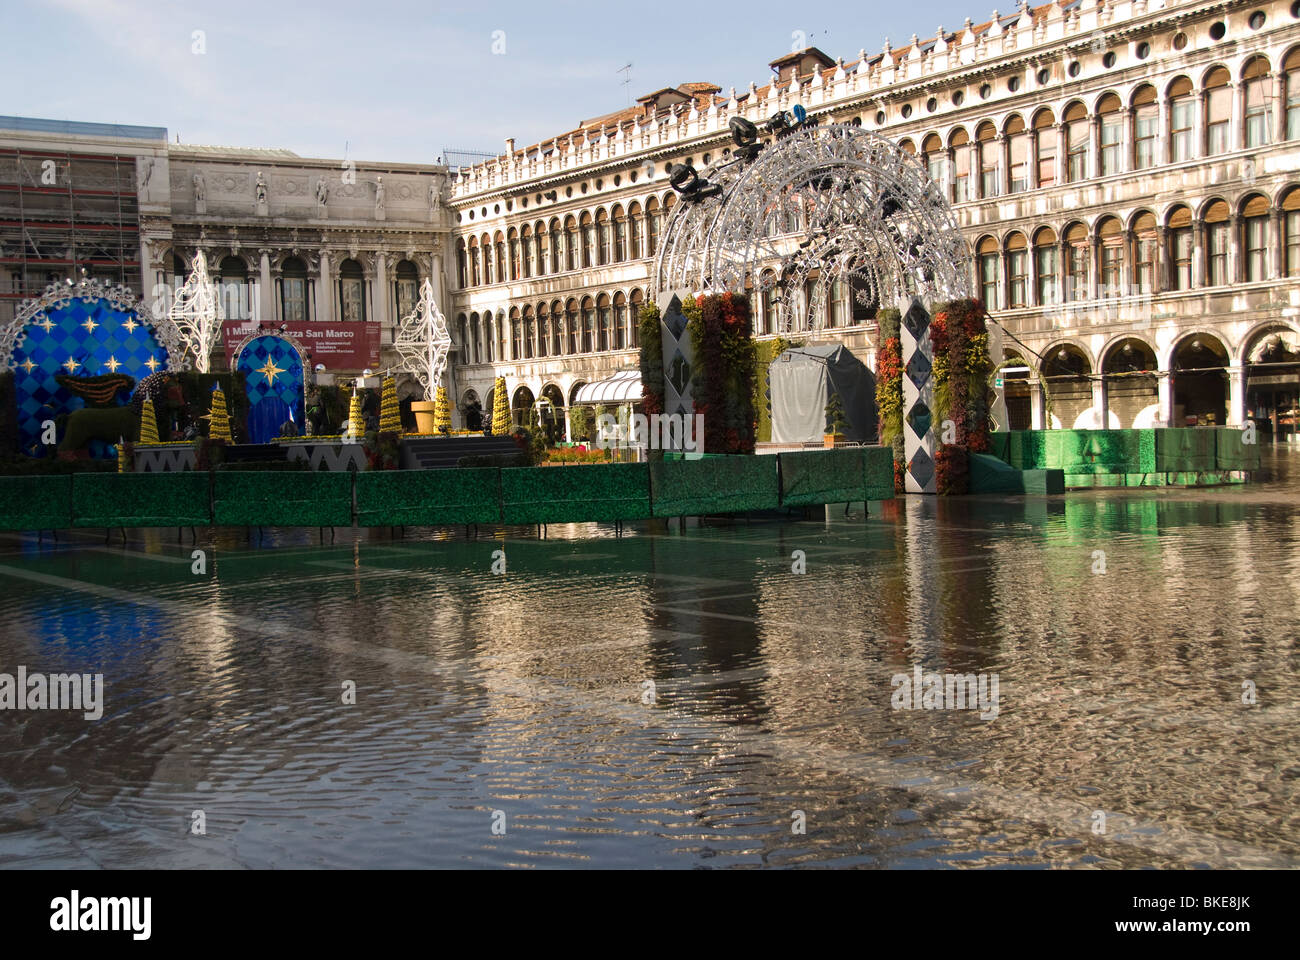 Acqua alta durante il Carnevale in Piazza San Marco, Venezia, Italia Foto Stock